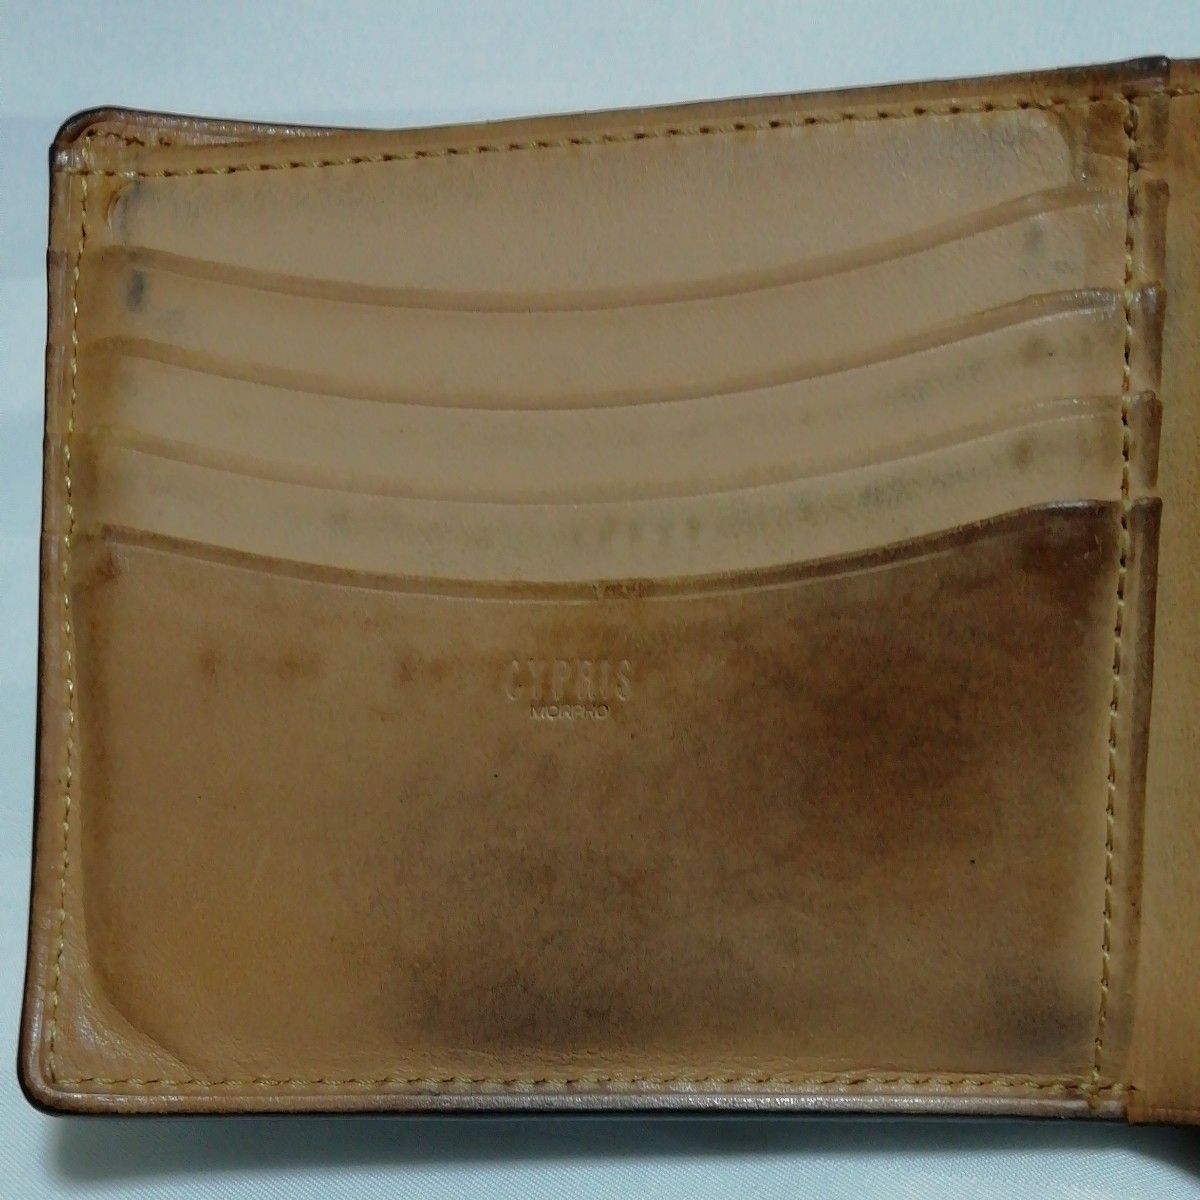 キプリス オイルシェルコードバン&フレンチレザー二つ折り財布 黒